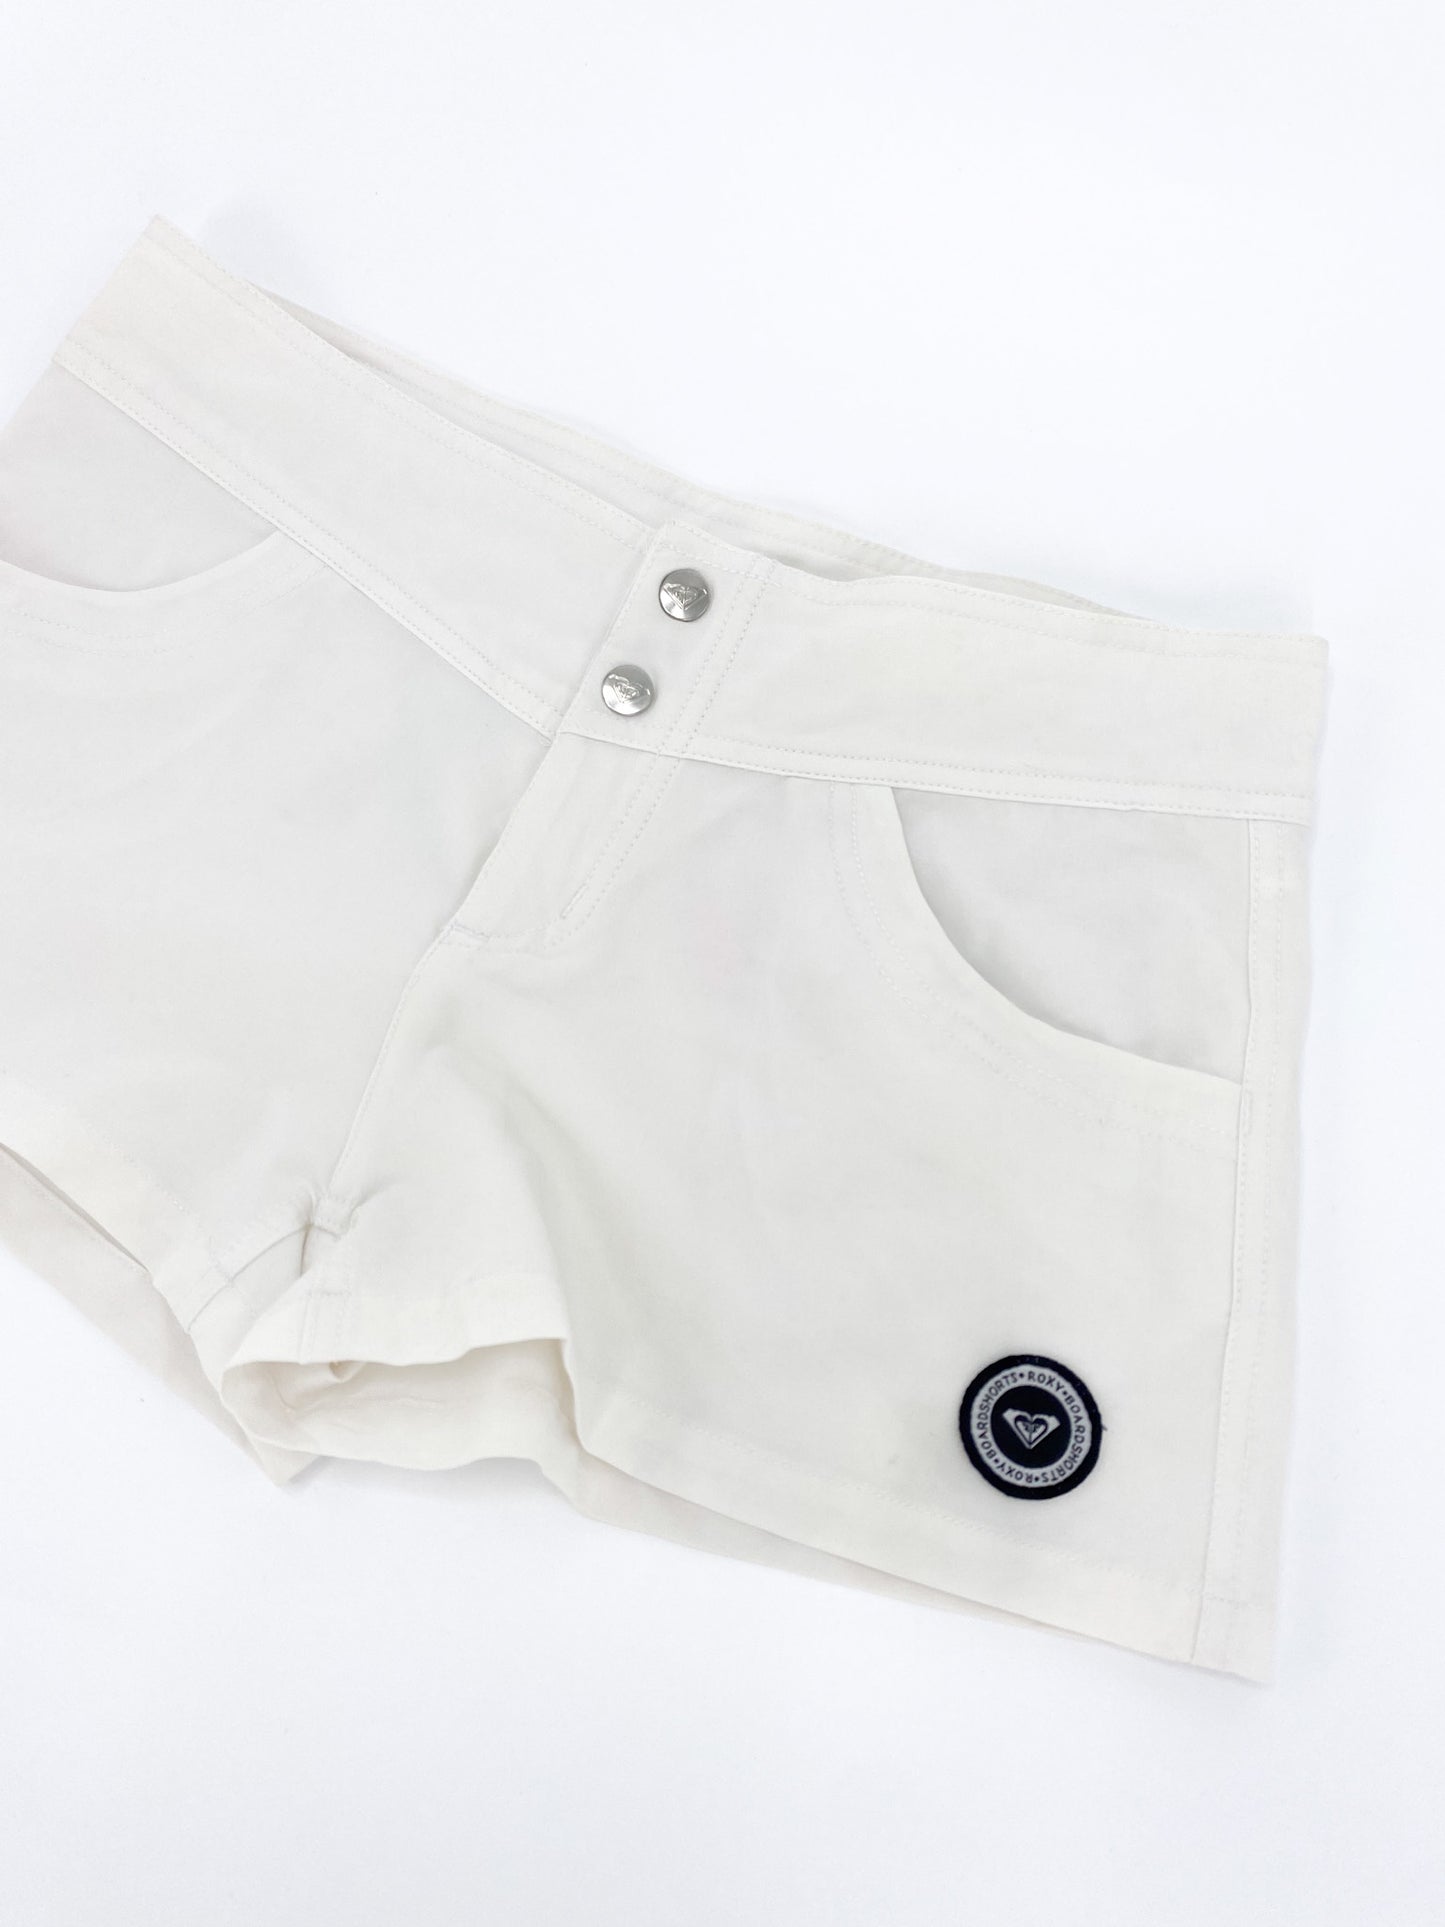 Vintage 00's White Roxy Booty Shorts  - S